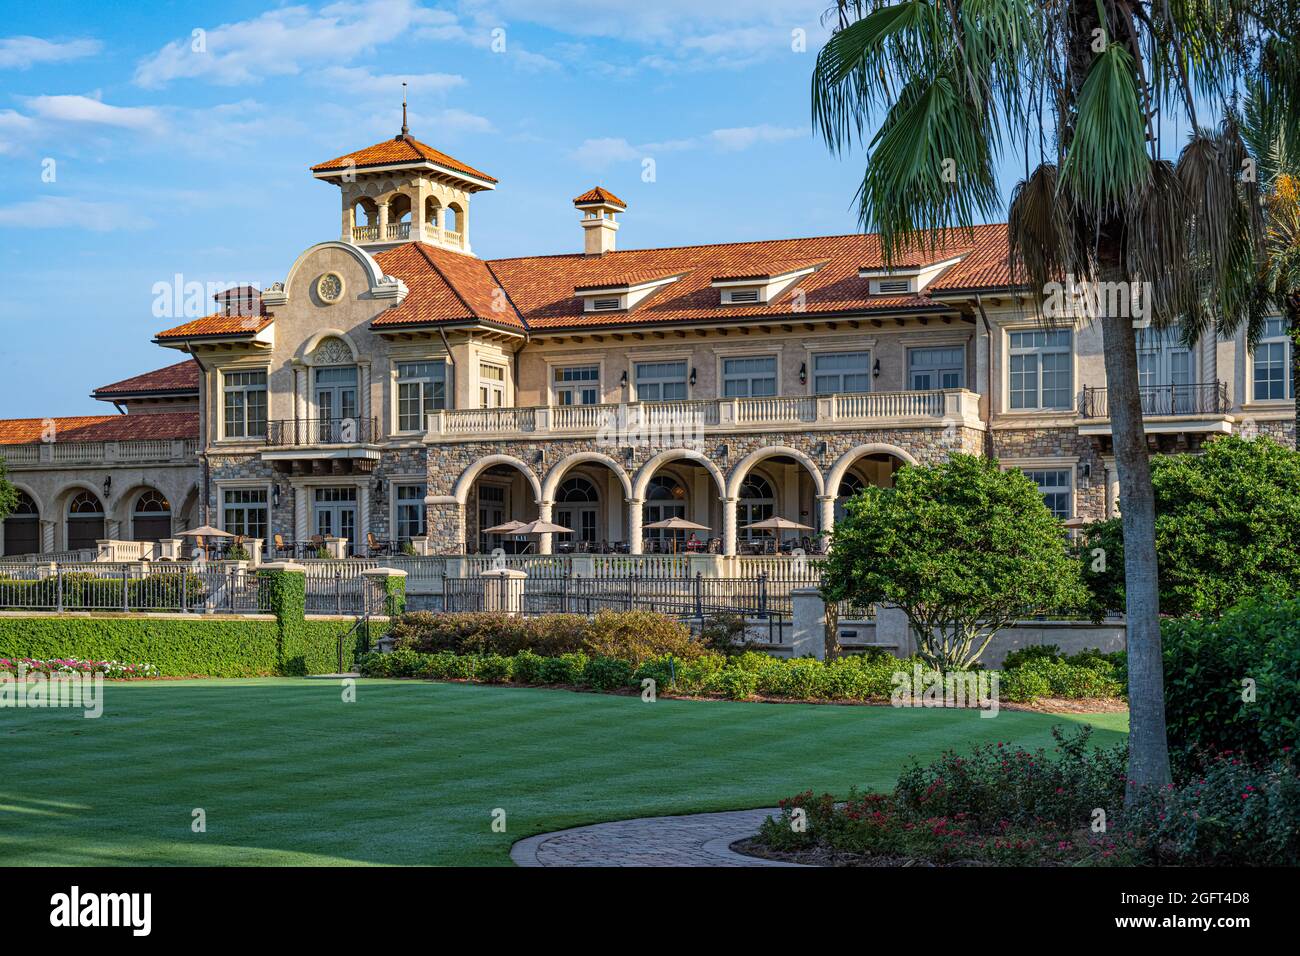 Club de golf de estilo mediterráneo en TPC Sawgrass, sede del torneo DE golf DE JUGADORES, en Ponte Vedra Beach, Florida. (EE. UU.) Foto de stock